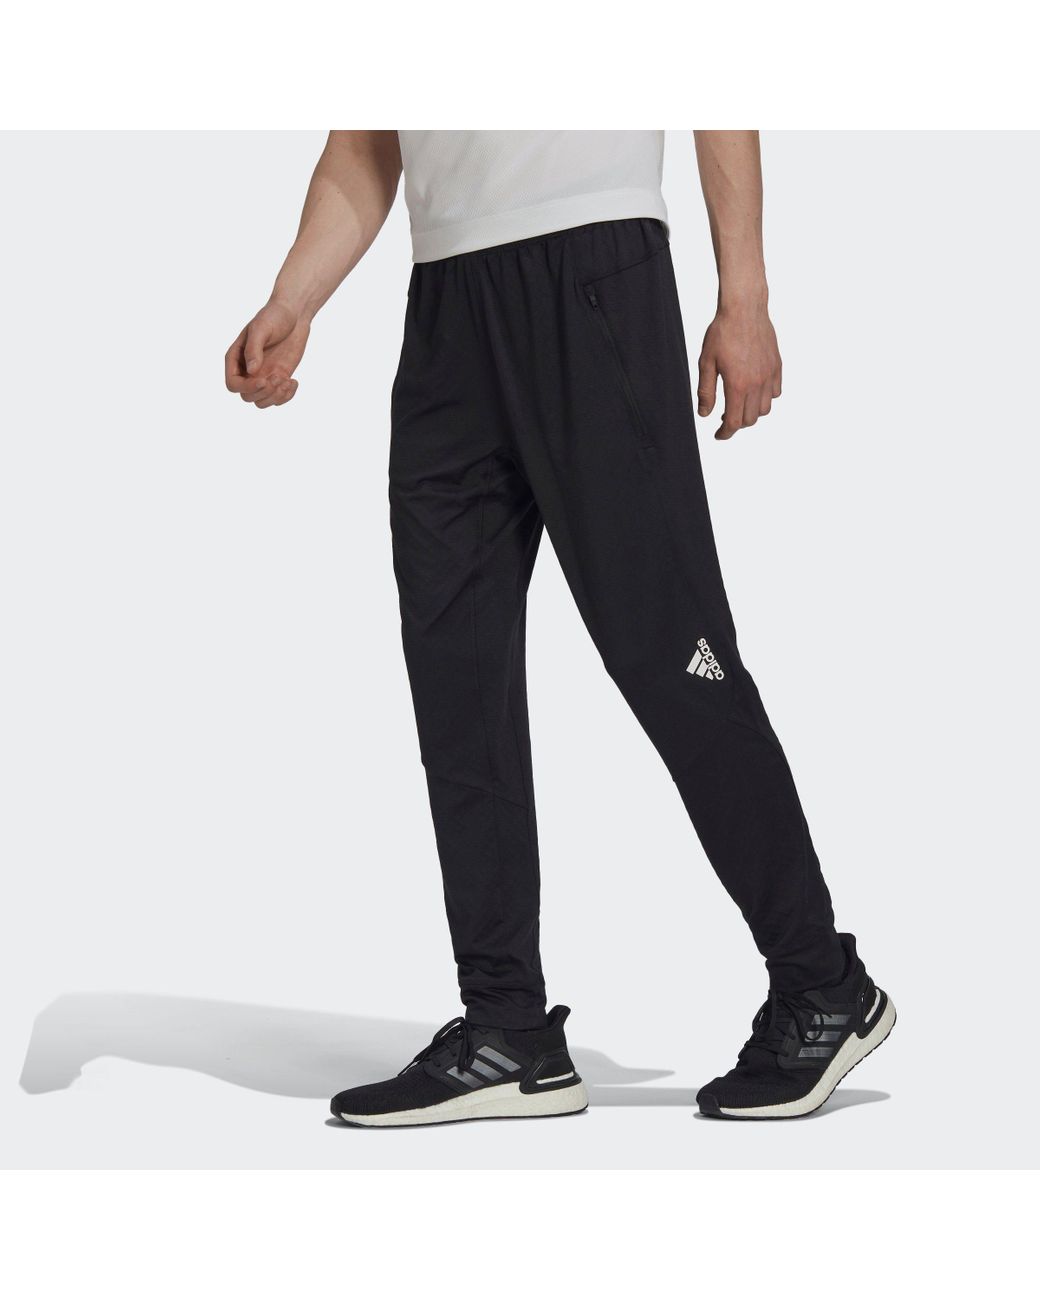 Inleg Ondergedompeld feit adidas Originals Sportbroek D4t Workout Warme Broek in het Zwart voor heren  | Lyst NL